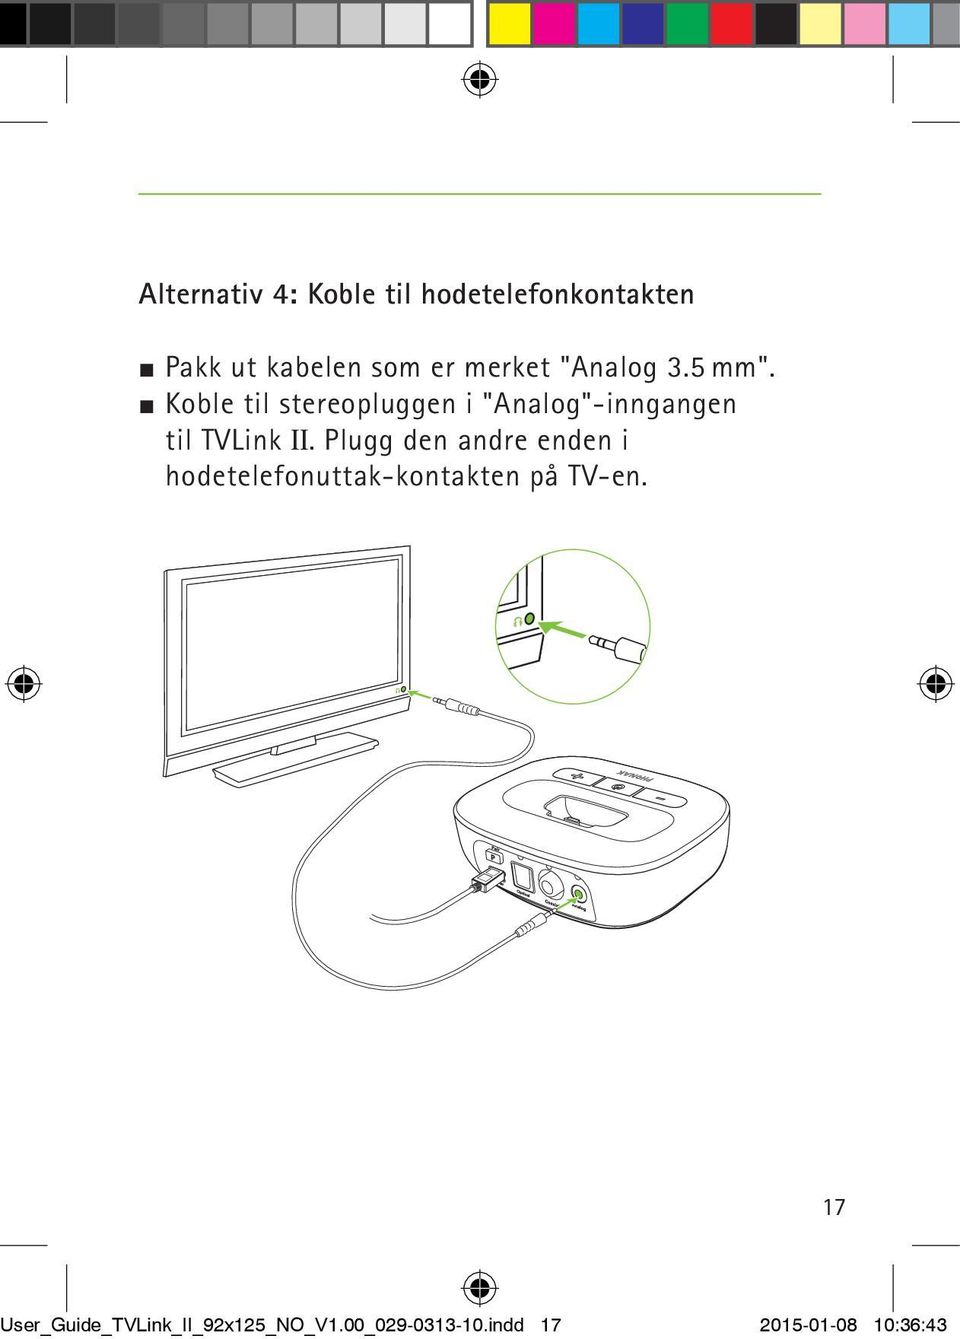 J Koble til stereopluggen i "Analog"-inngangen til TVLink II.